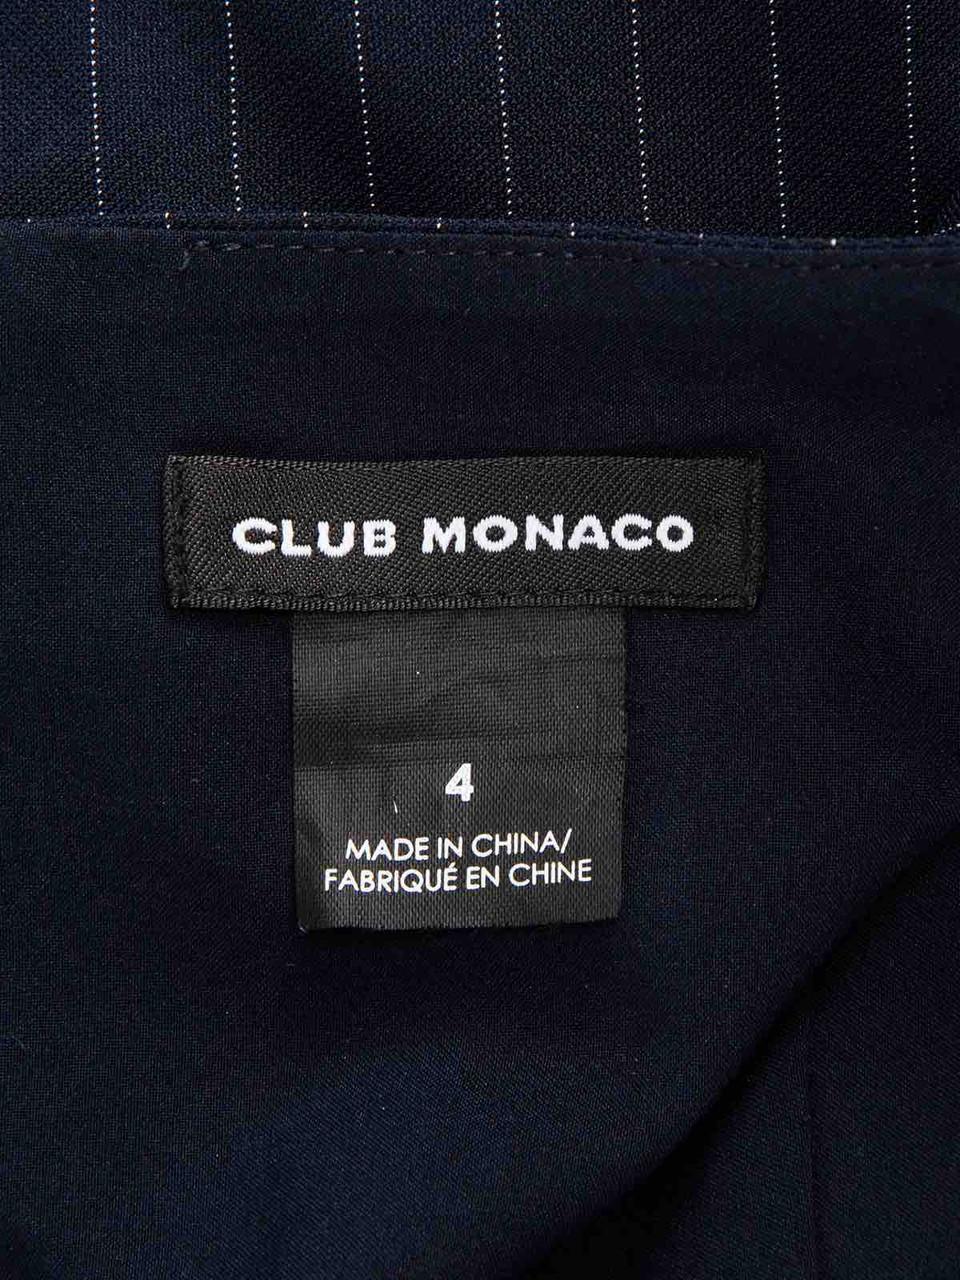 Club Monaco Navy Pinstripe Dress Size S 2